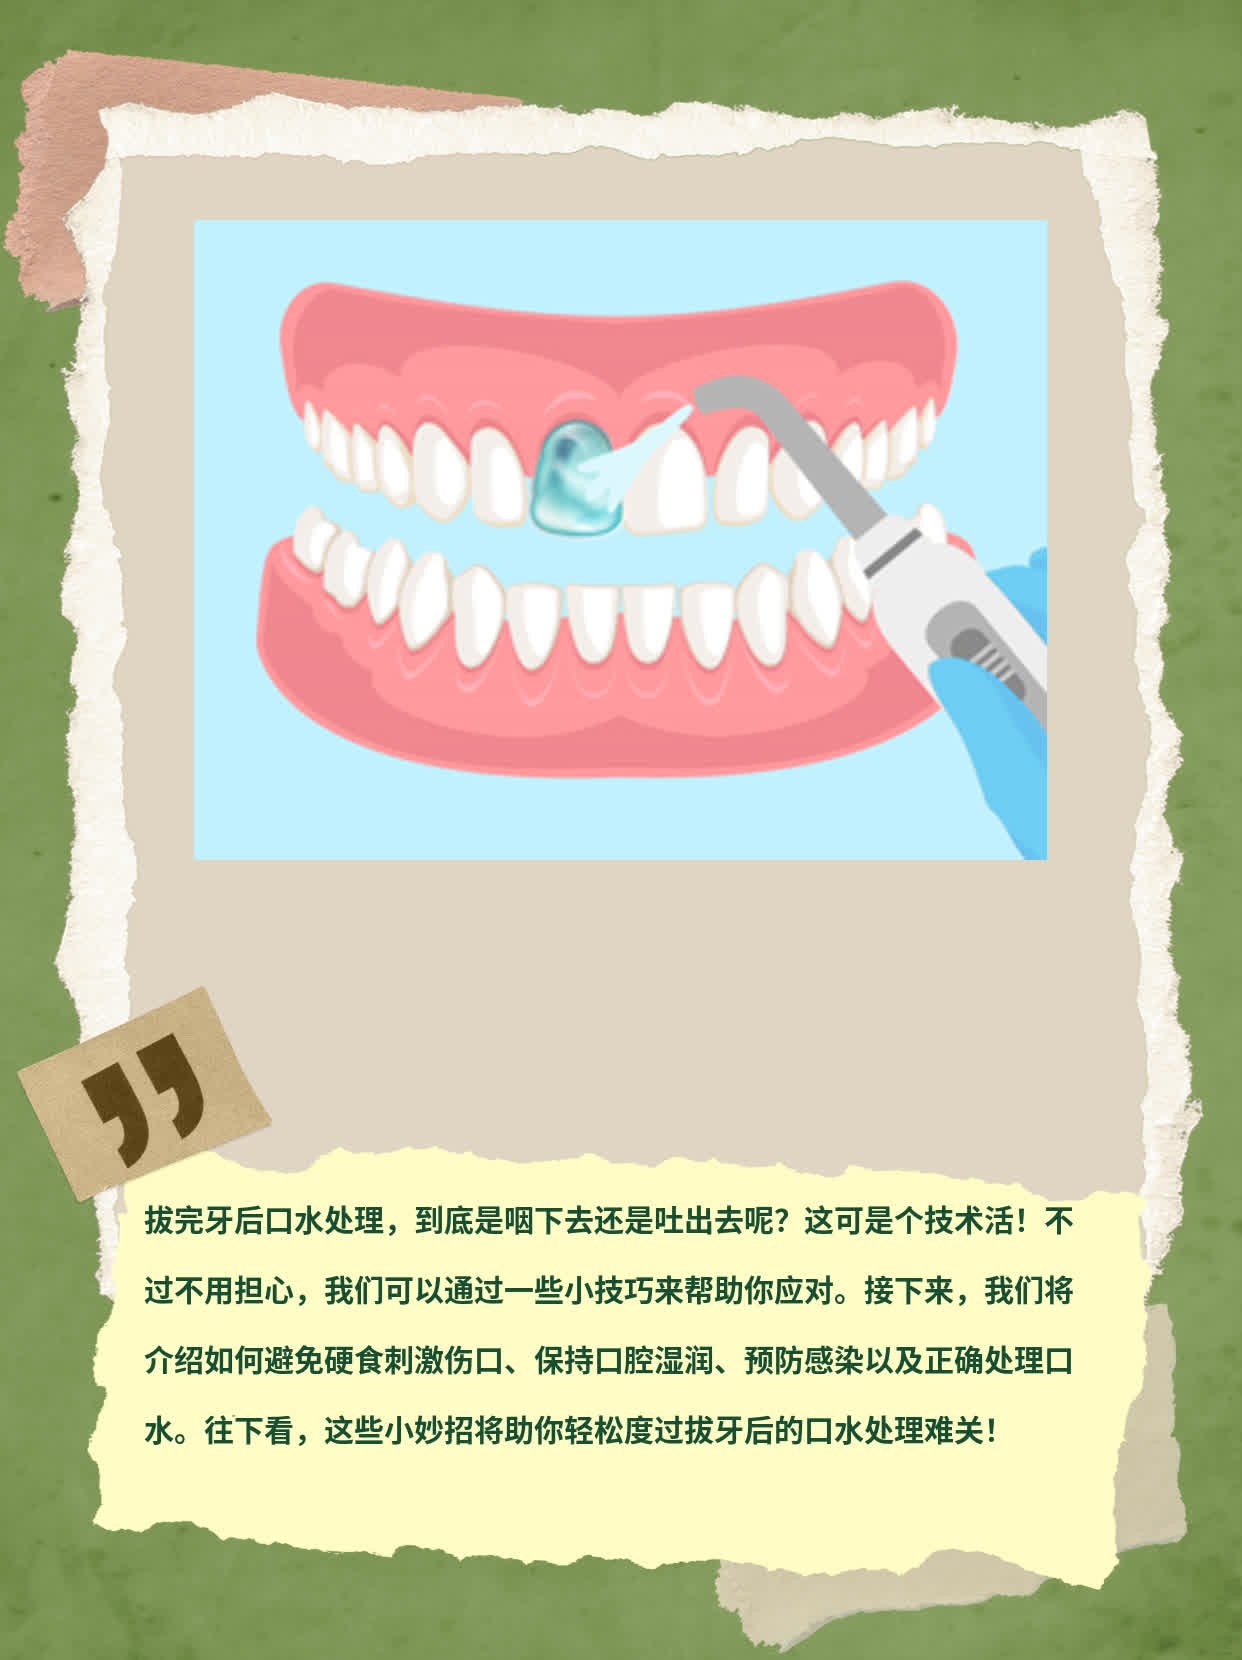 「拔完牙后口水处理」你知道该咽还是吐吗？